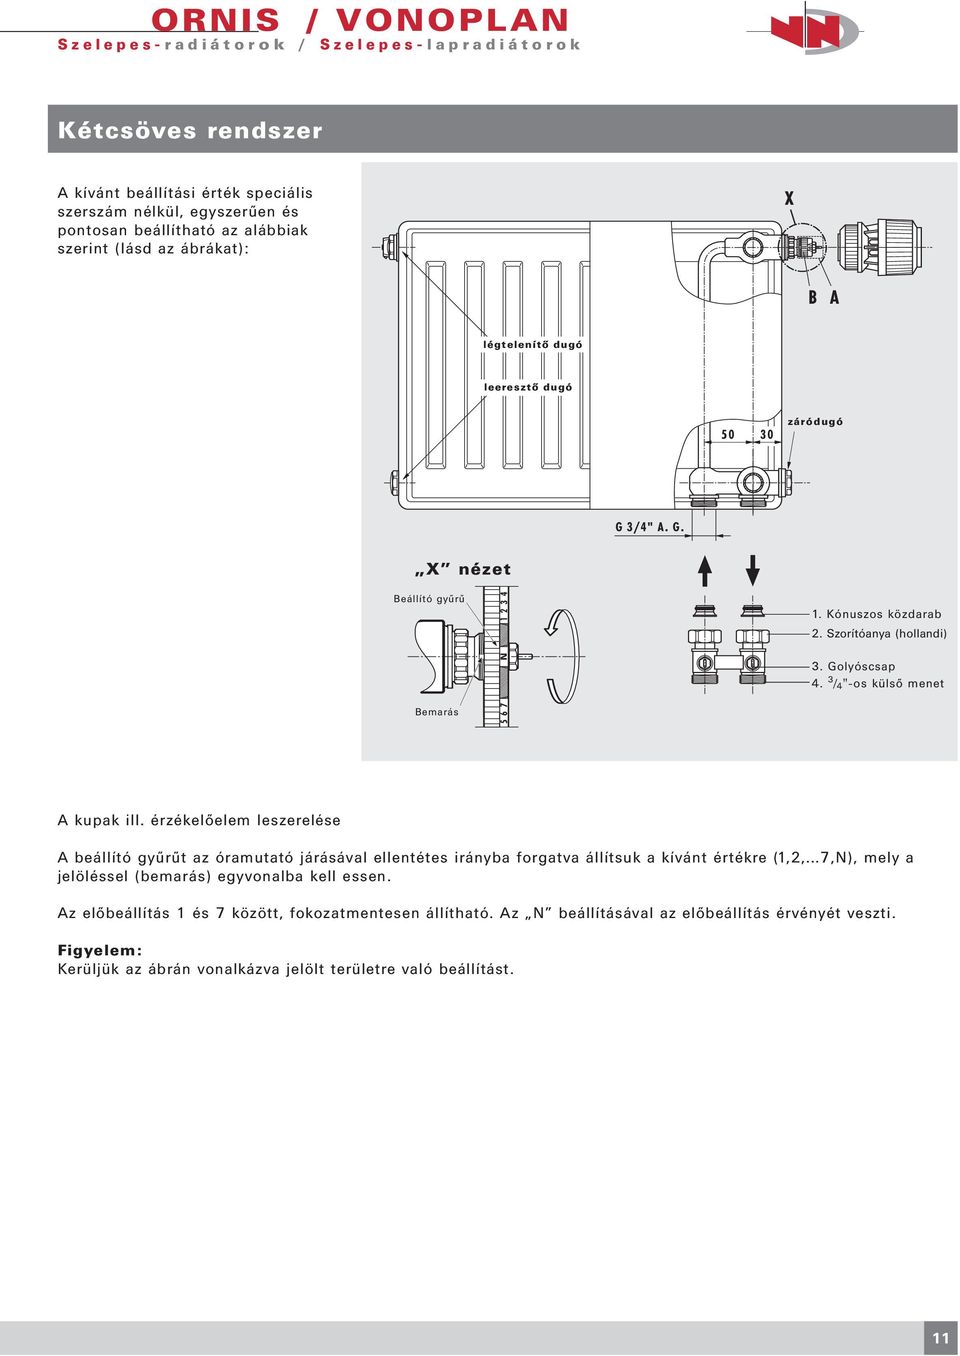 Műszaki katalógus 04/2005 U VOGEL & NOOT. radiátorok VOGEL & NOOT.  Hőtechnika - PDF Ingyenes letöltés